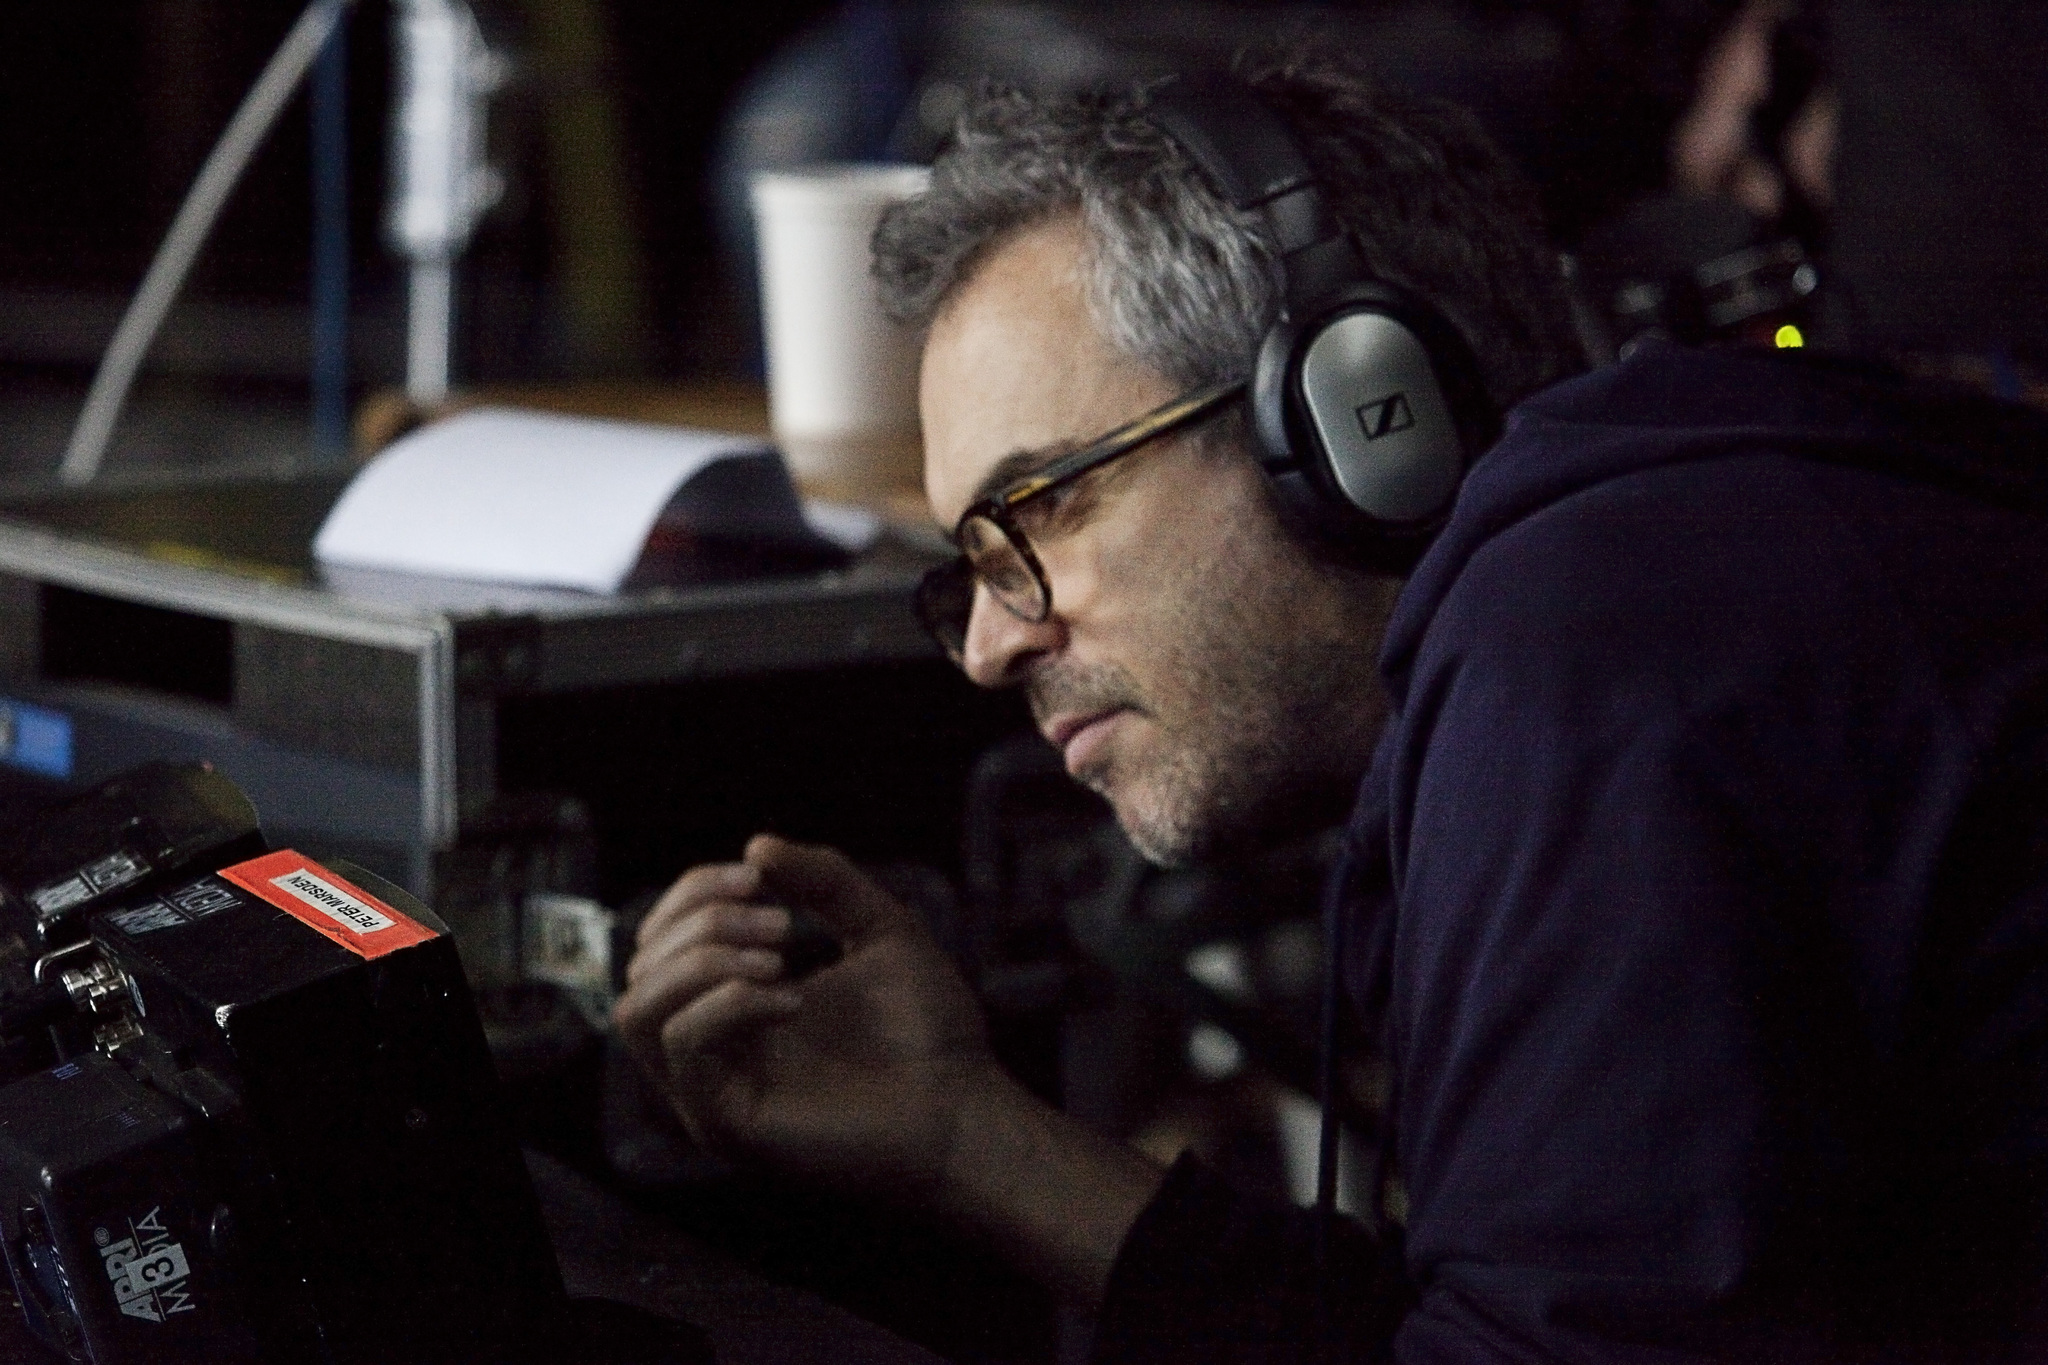 Alfonso Cuarón in Gravitacija (2013)